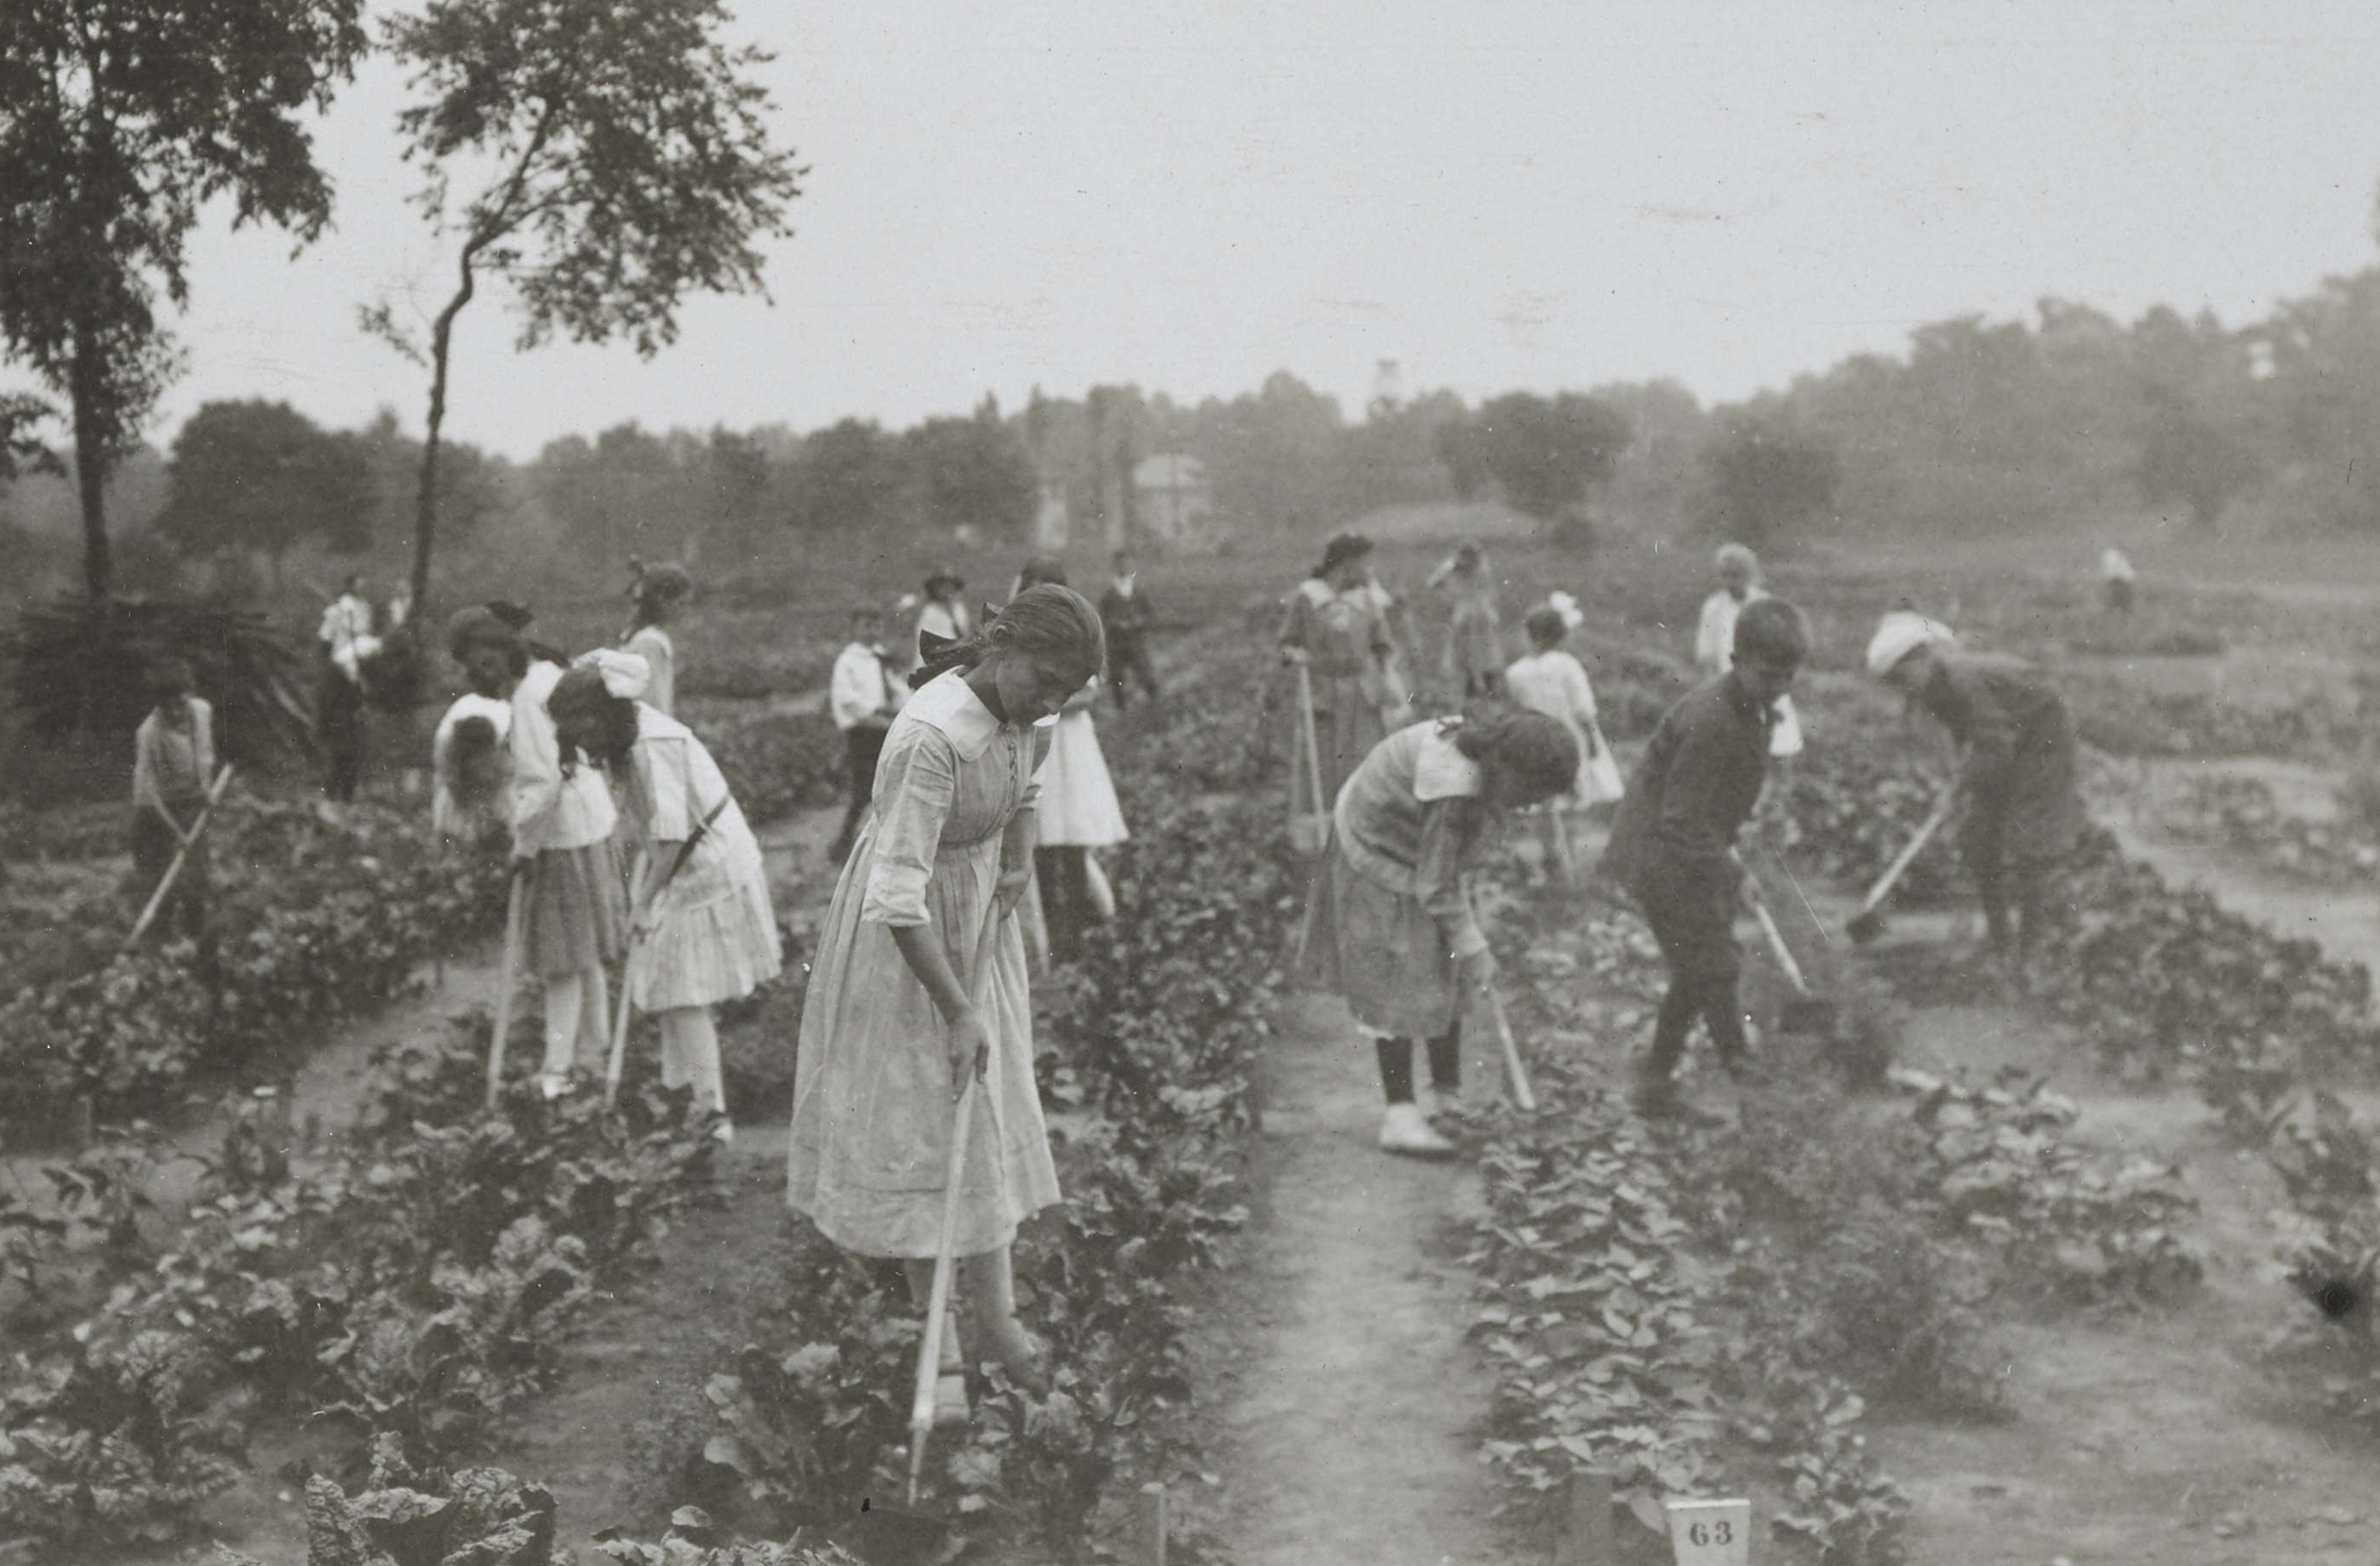 War garden activities by the children of the Irving-Jefferson School, Plainfield, New Jersey